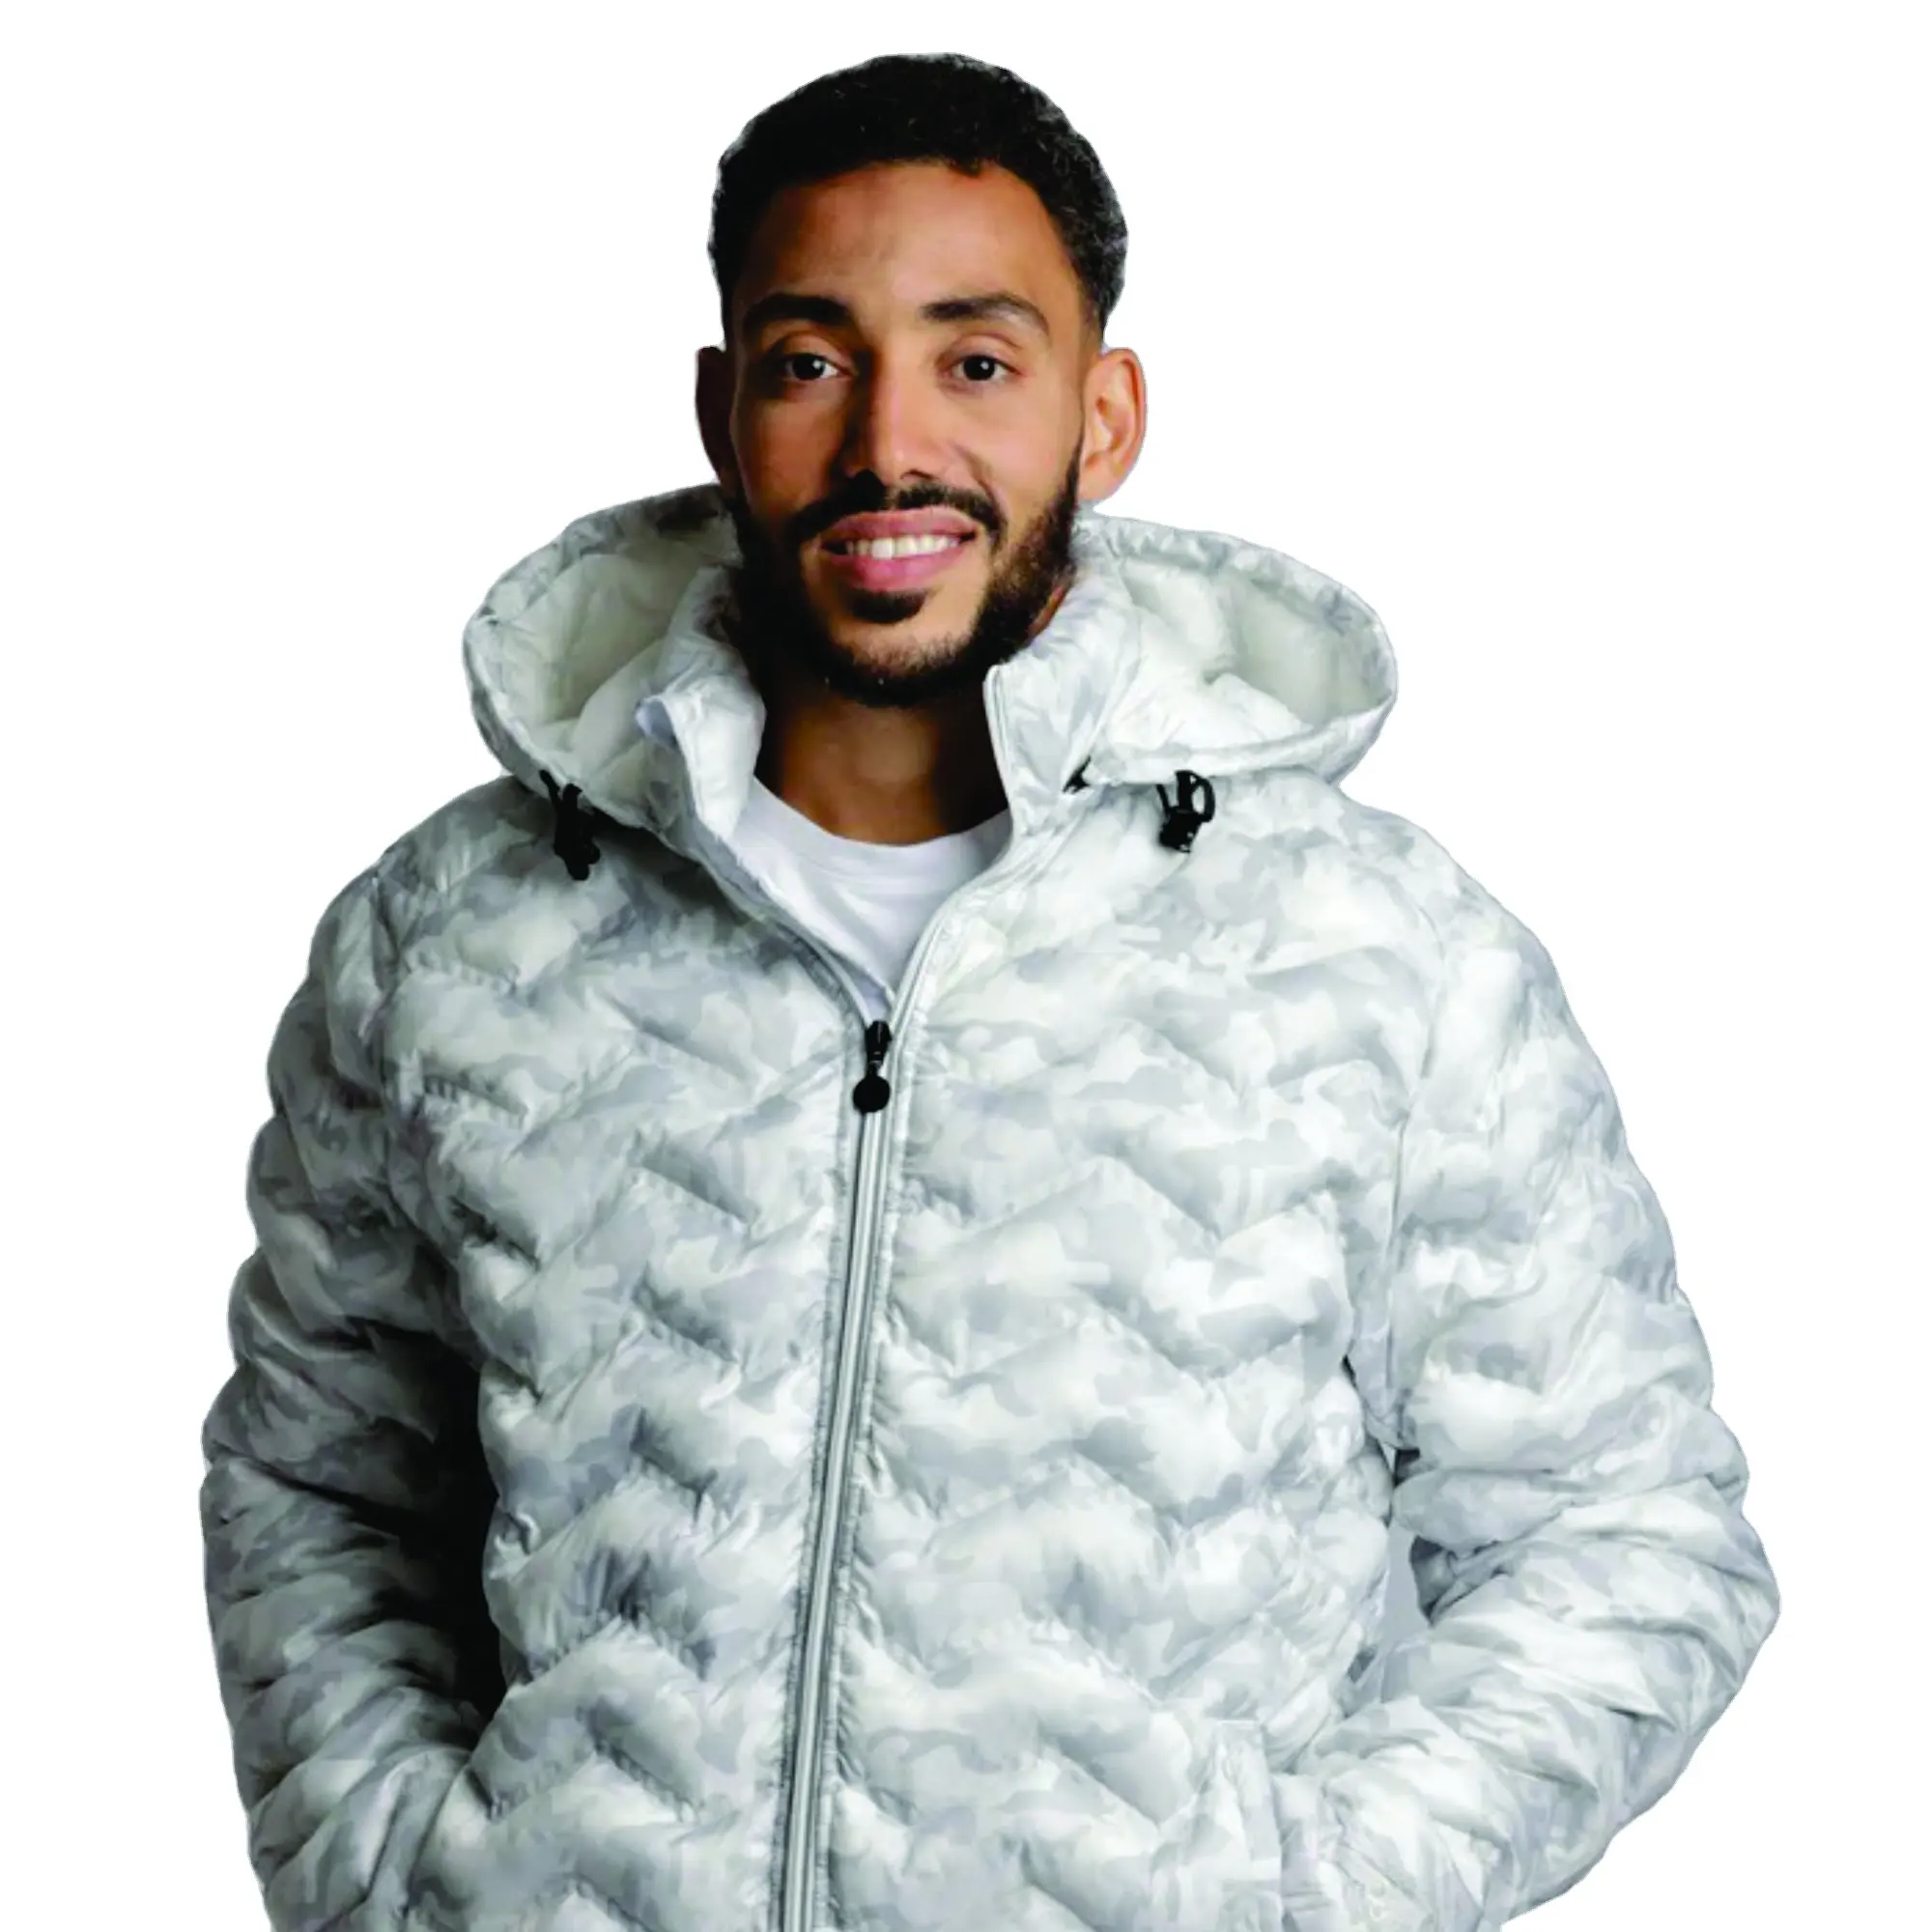 Personalizado Inverno Homens de Alta Qualidade Jaqueta de Inverno Com Capuz Fantasia Full Print Puffer Coat Designer de Luxo Puffer Jacket para Mim